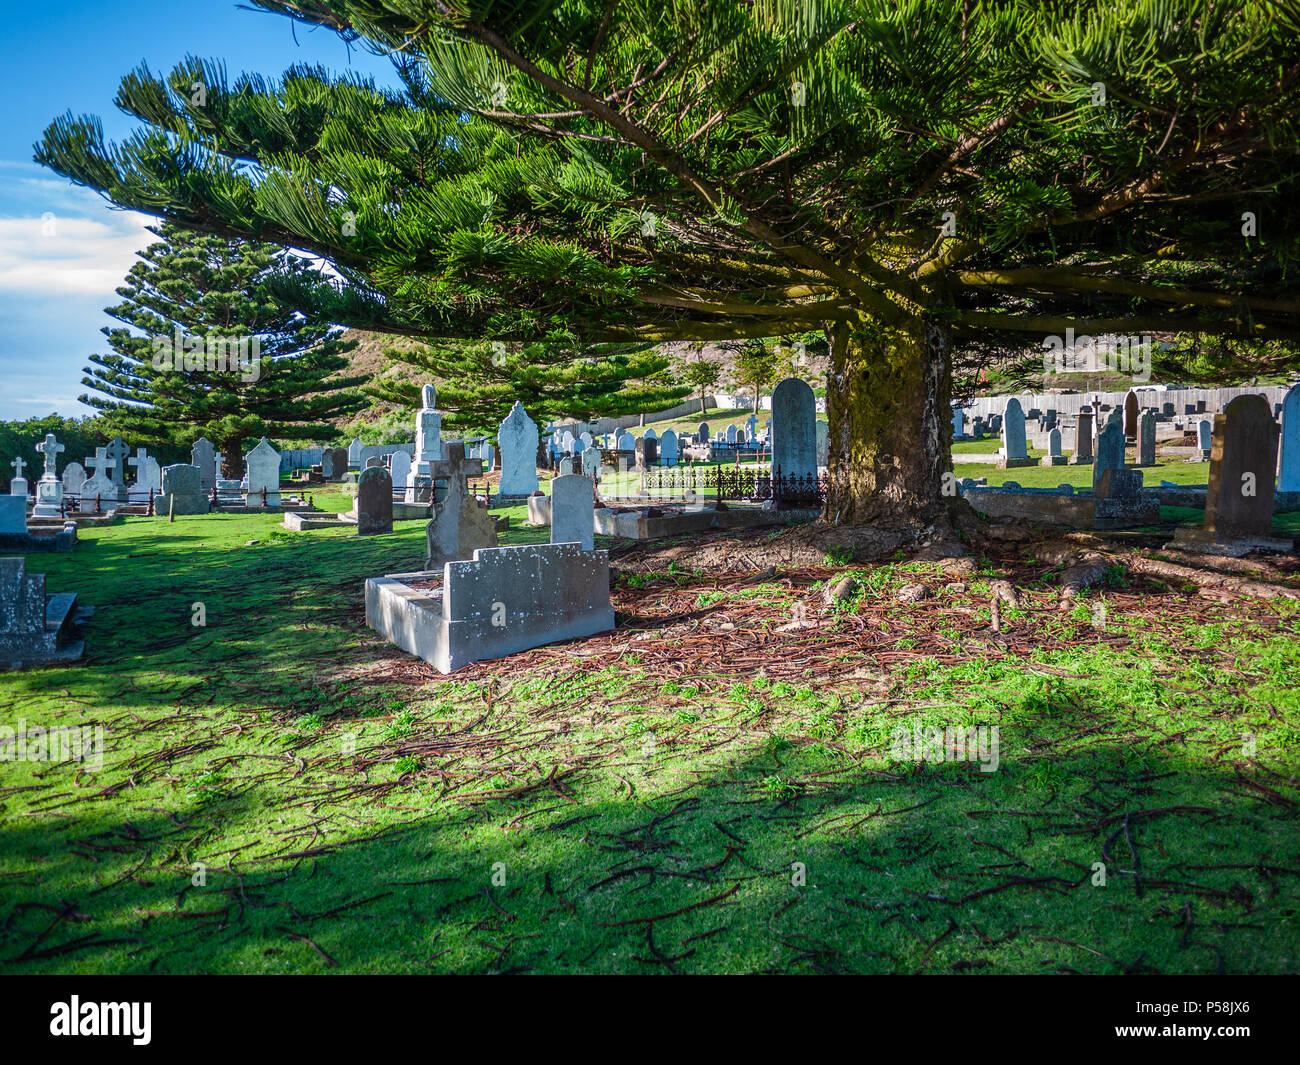 La pierre tombale et tombes de cimetière. Vieilles tombes de pierre dans son cimetière. Vieux Cimetière Stanley, ville de Stanley, Tasmanie, Australie Banque D'Images